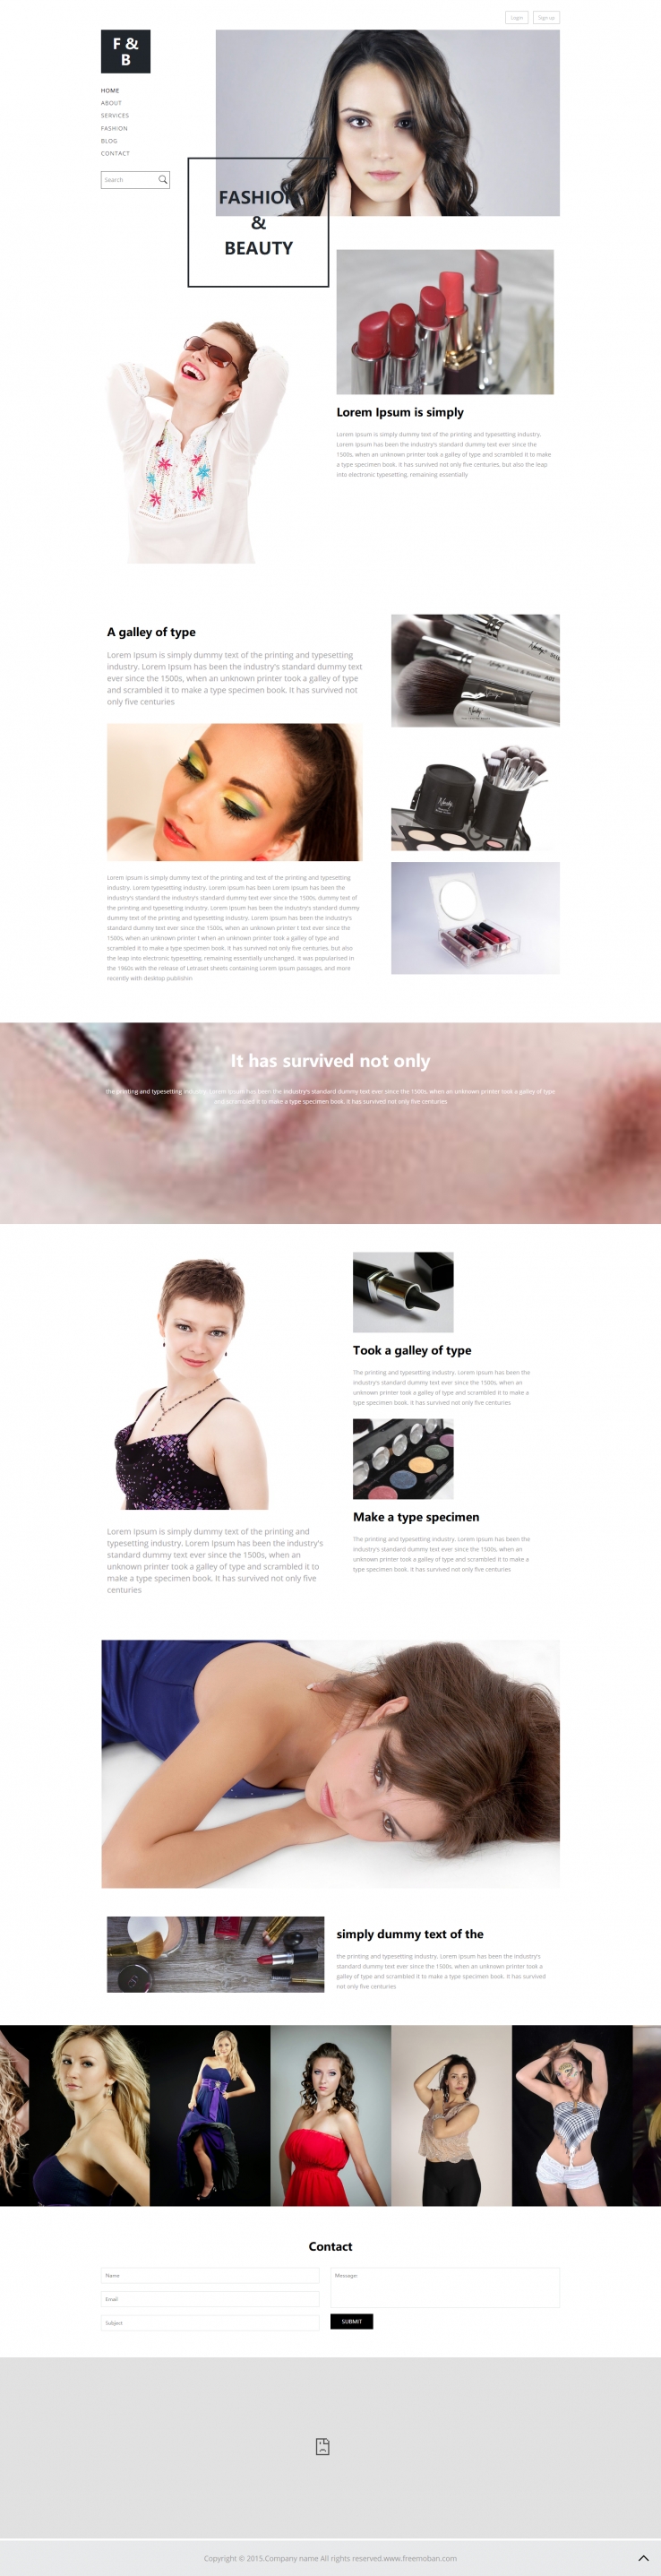 黑色个性风格的模特时装周网站模板下载